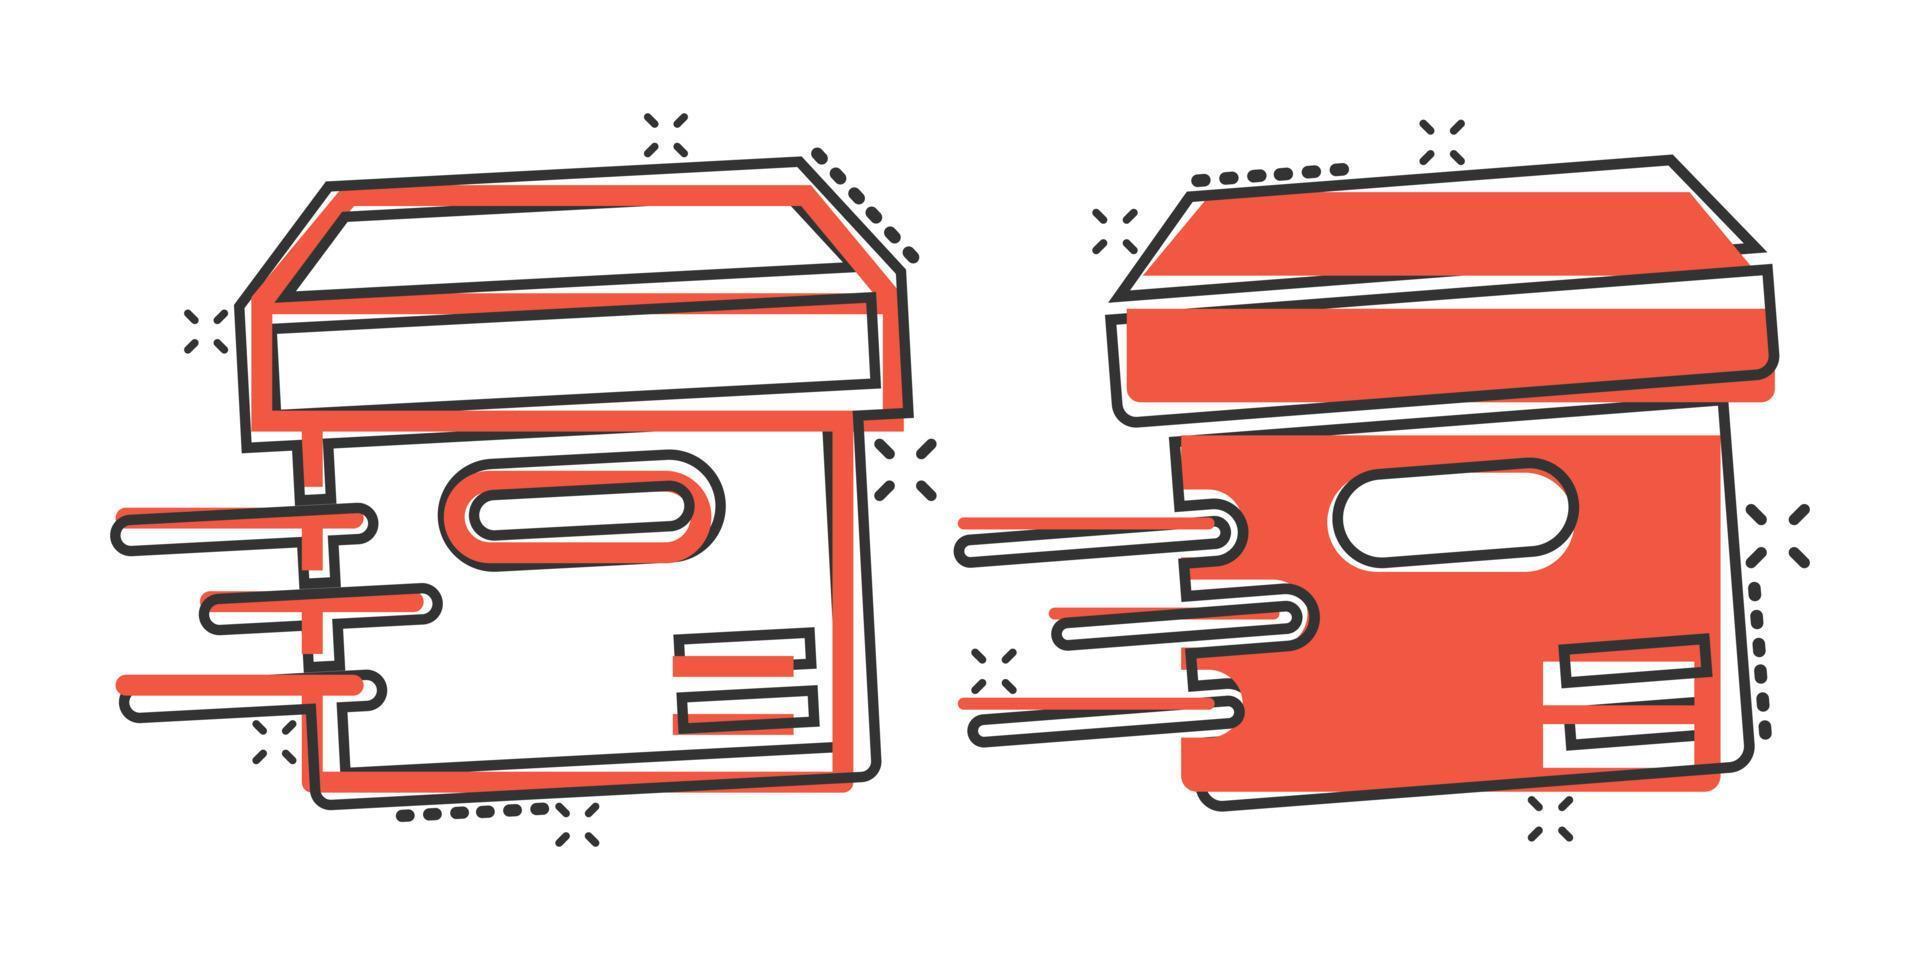 ícone da caixa de transporte em estilo cômico. ilustração em vetor recipiente dos desenhos animados no fundo branco isolado. conceito de negócio de efeito de respingo de pacote de papelão.